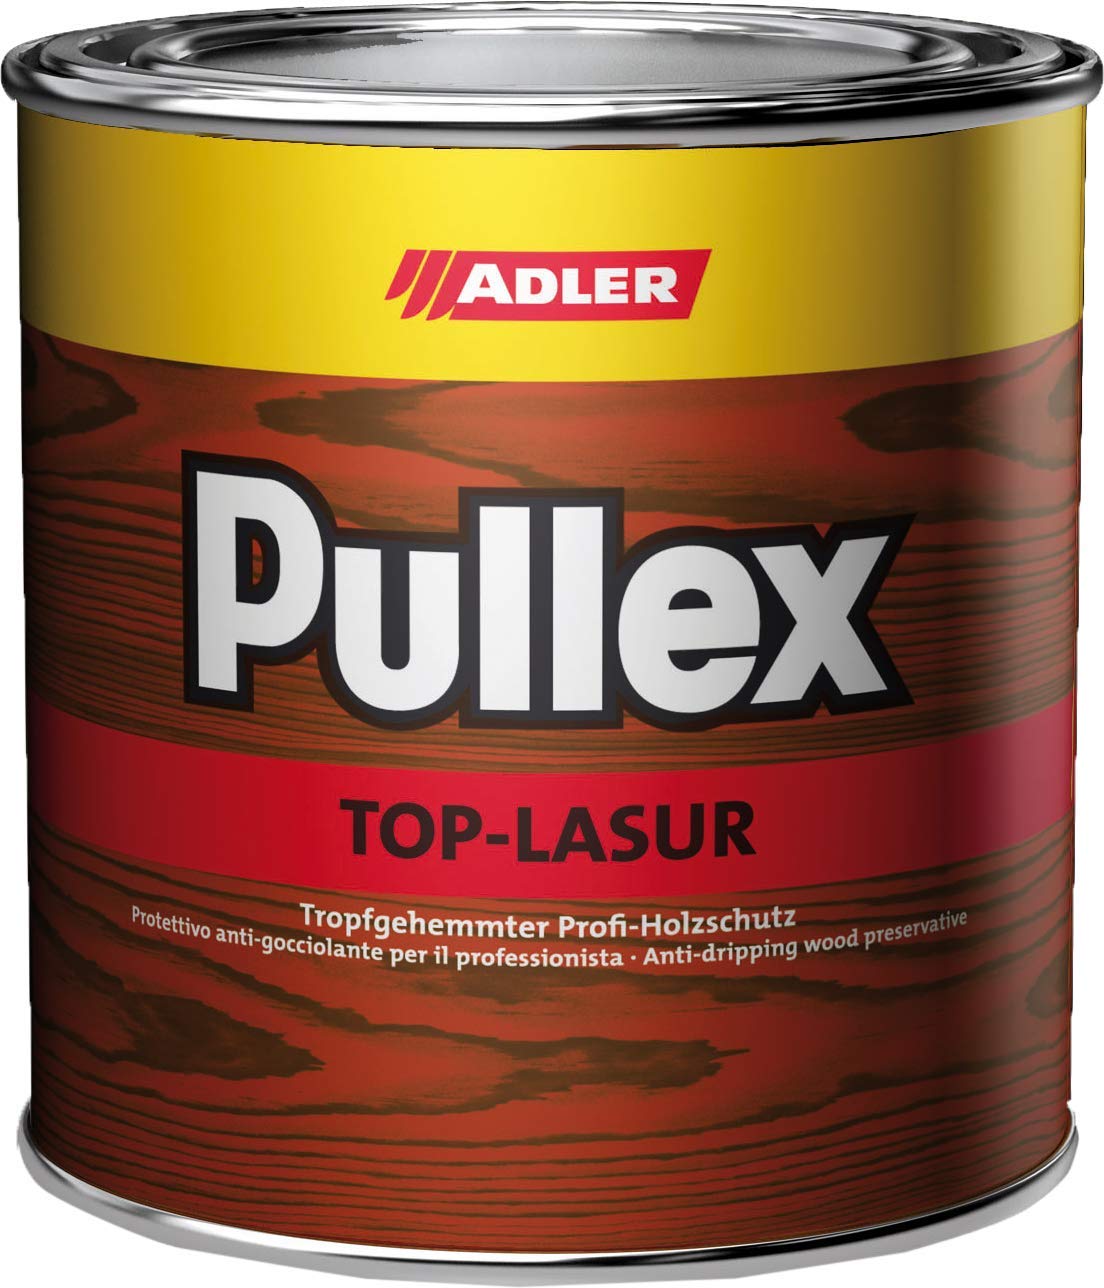 ADLER Pullex Top-Lasur - 2,5 L Wenge - Tropfgehemmte Holzlasur in Profi-Qualität für Holz außen - Lasur in verschiedenen Holzfarbtönen